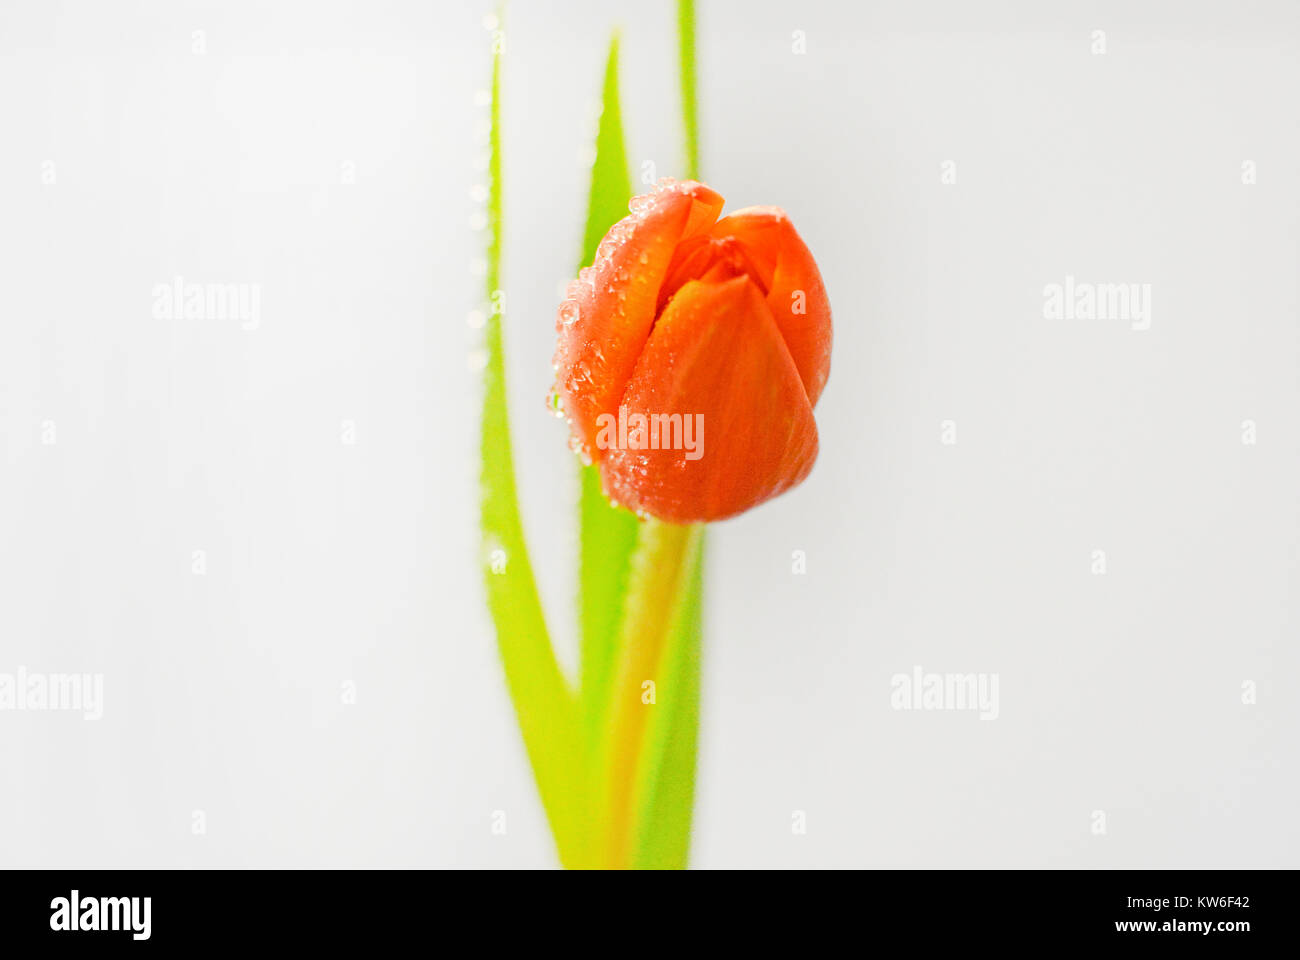 Photographie artistique simple, d'une orange tulip posés gracieusement contre un contexte moderne. Banque D'Images